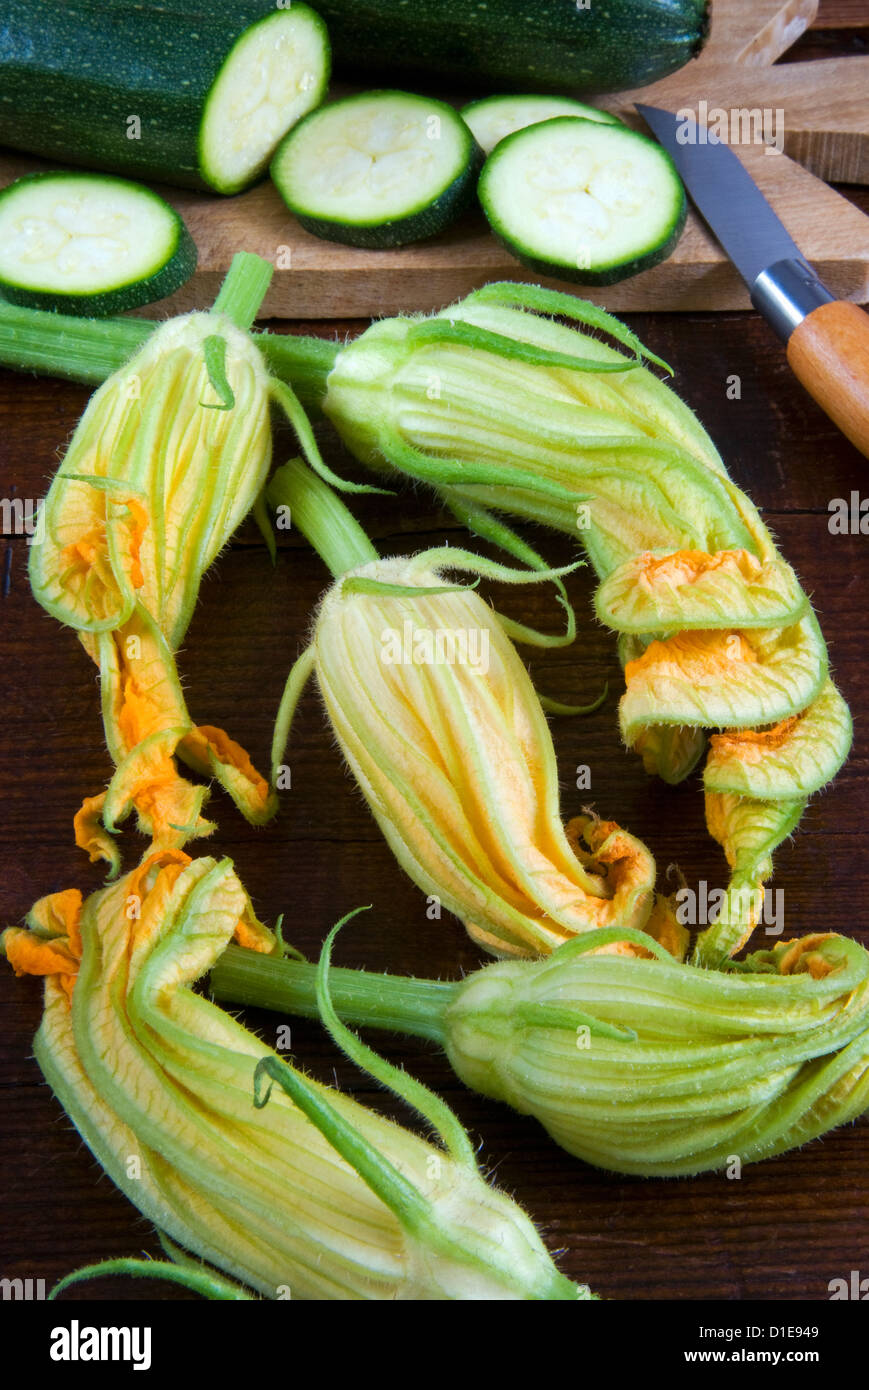 Fiori di zucca e la zucchina tagliata a fette, Italia, Europa Foto Stock